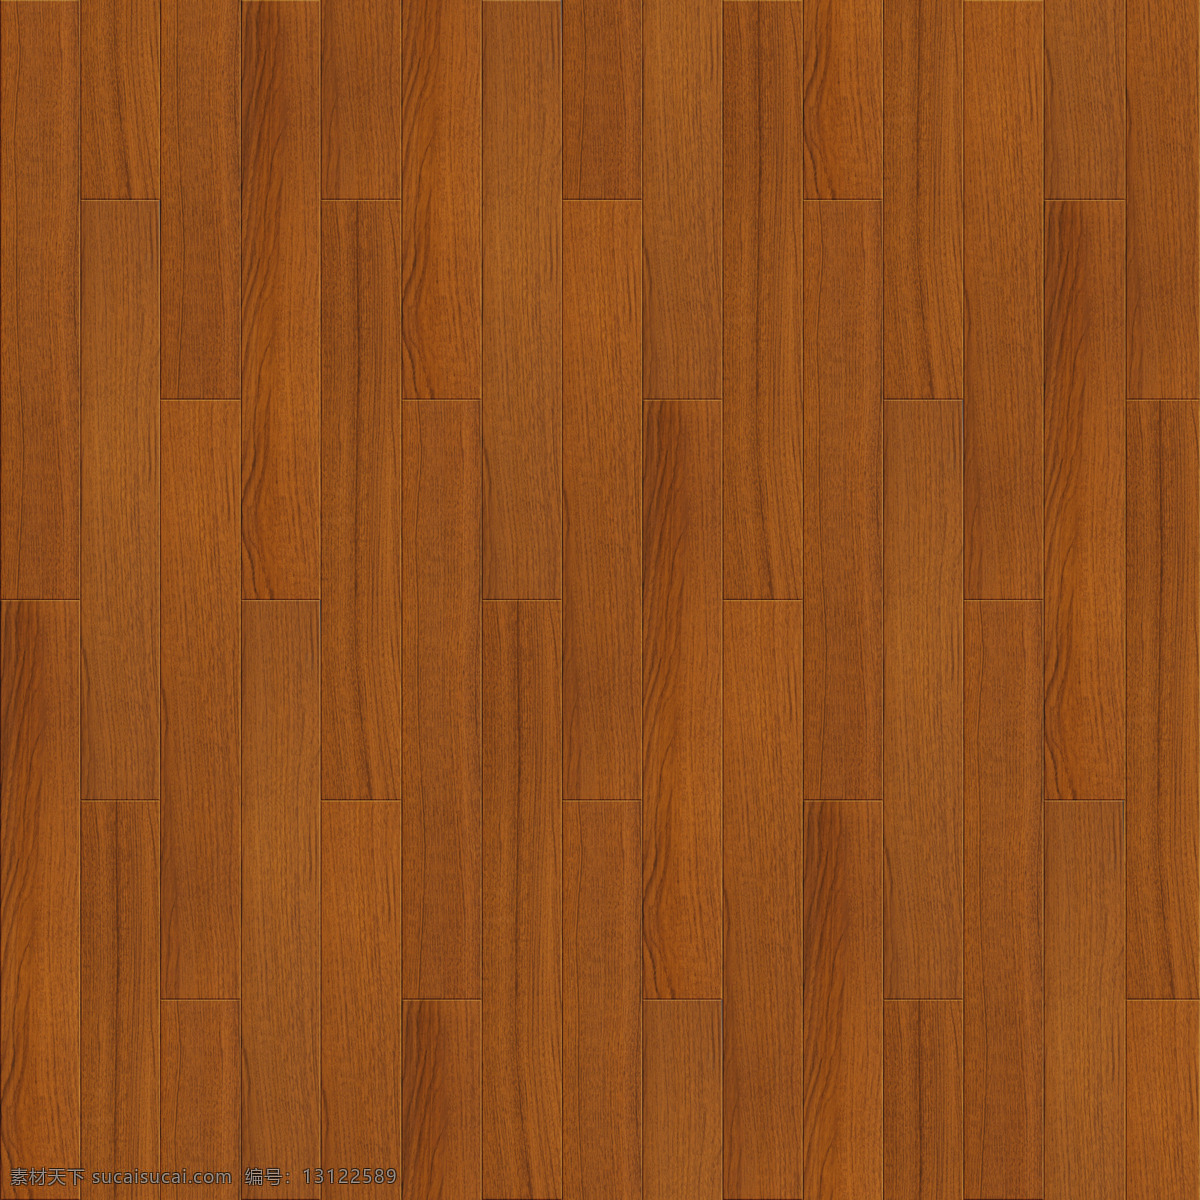 柚木 地板 高清 木纹 图 3d渲染 木地板 实木地板 木质地板 地板纹理 地板纹路 原木木纹 木纹理图片